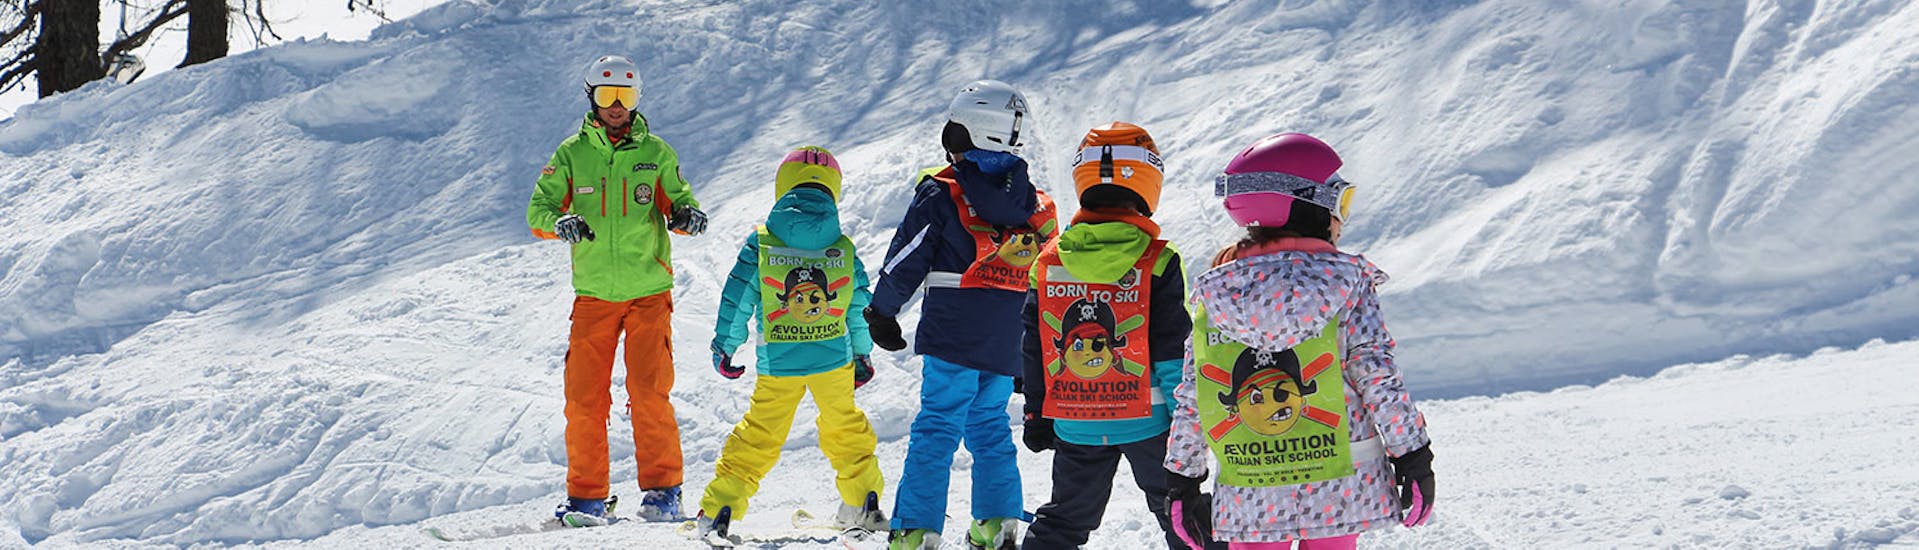 Skileraren en kinderen op de pistes van Folgarida tijdens een van de kinderskilessen voor alle niveaus de hele dag.